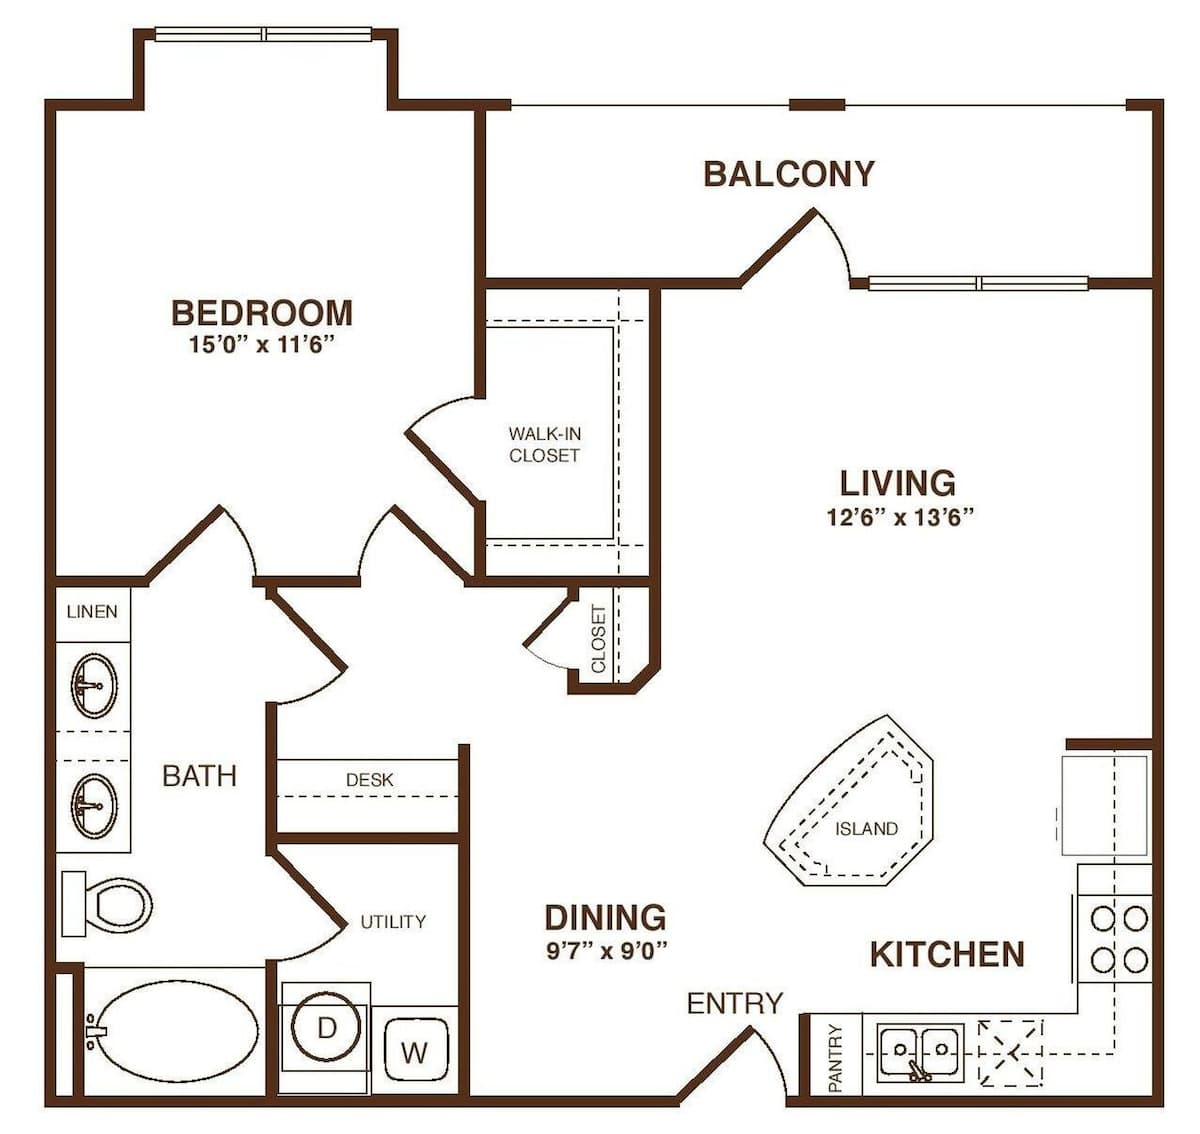 Floorplan diagram for The Excelsior, showing 1 bedroom